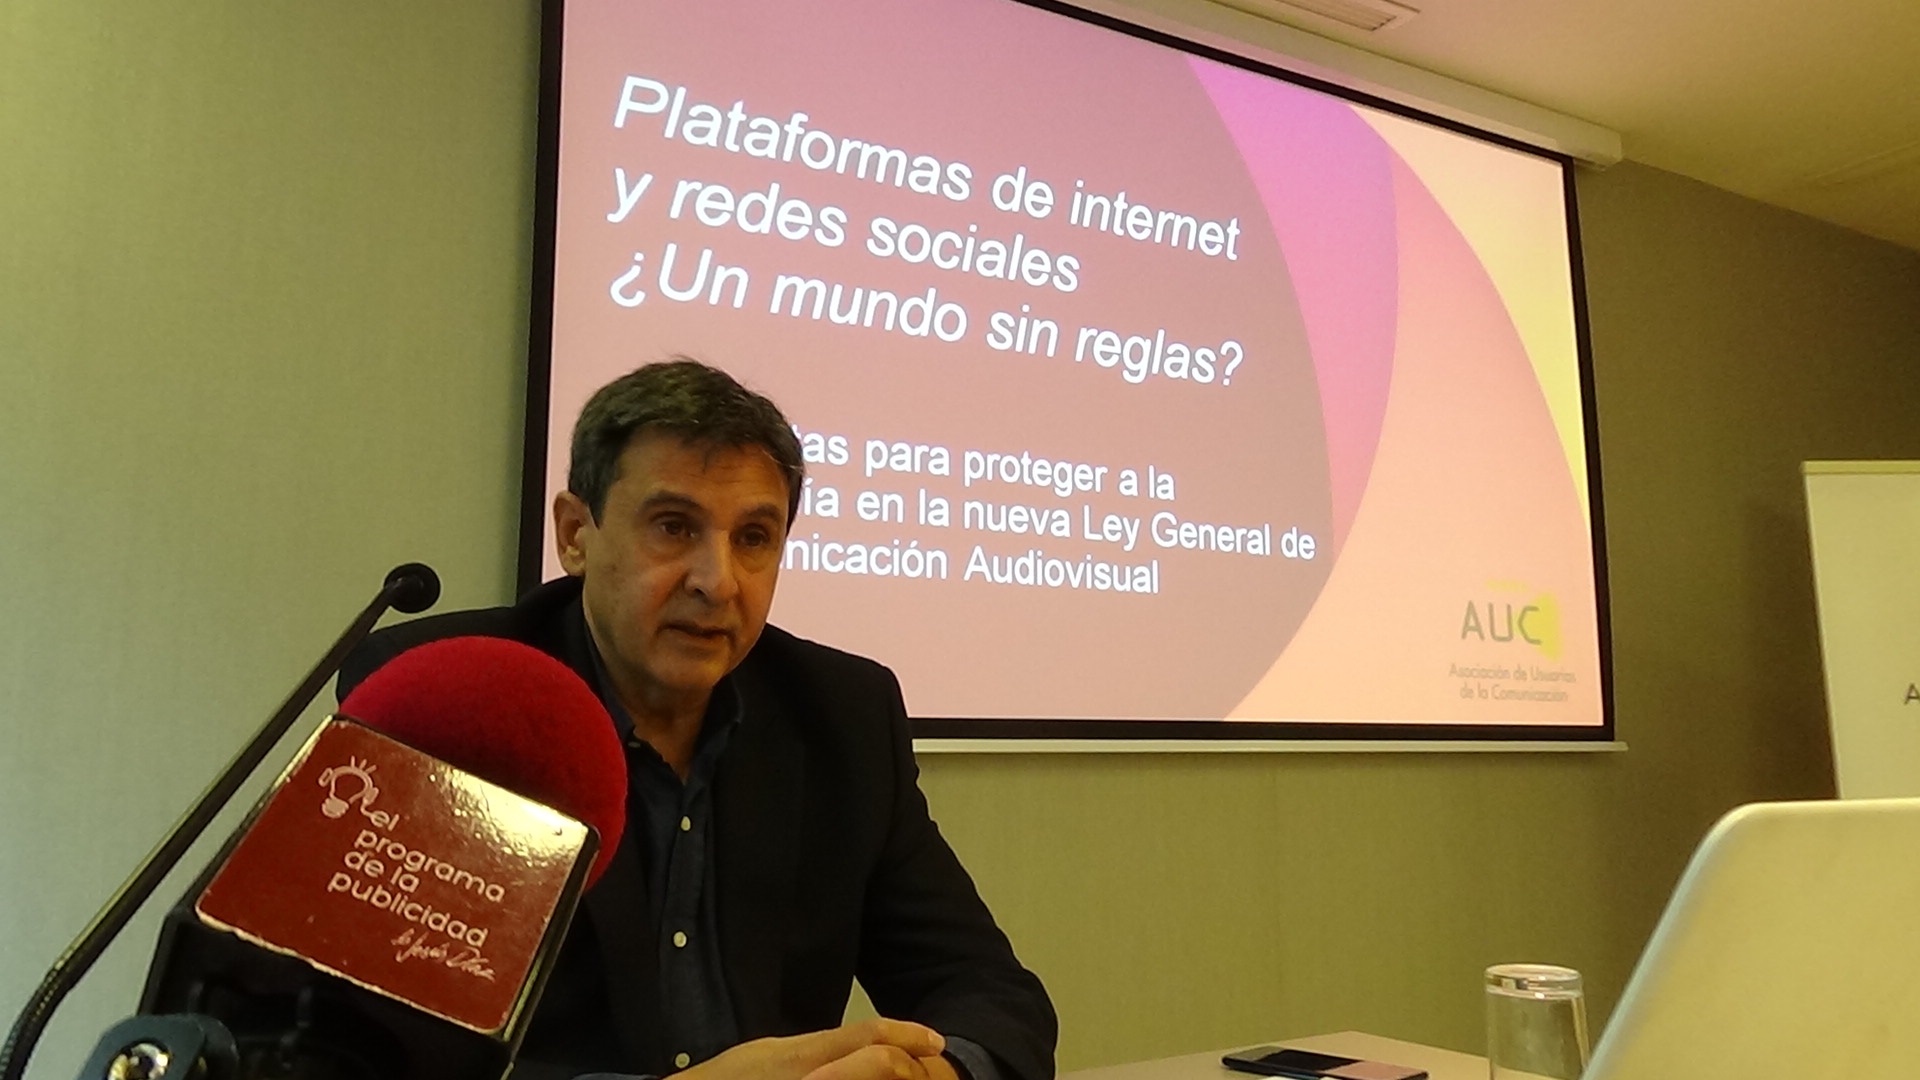 Alejandro Perales, auc, ley audiovisual, plataformas, reglas, programapublicidad